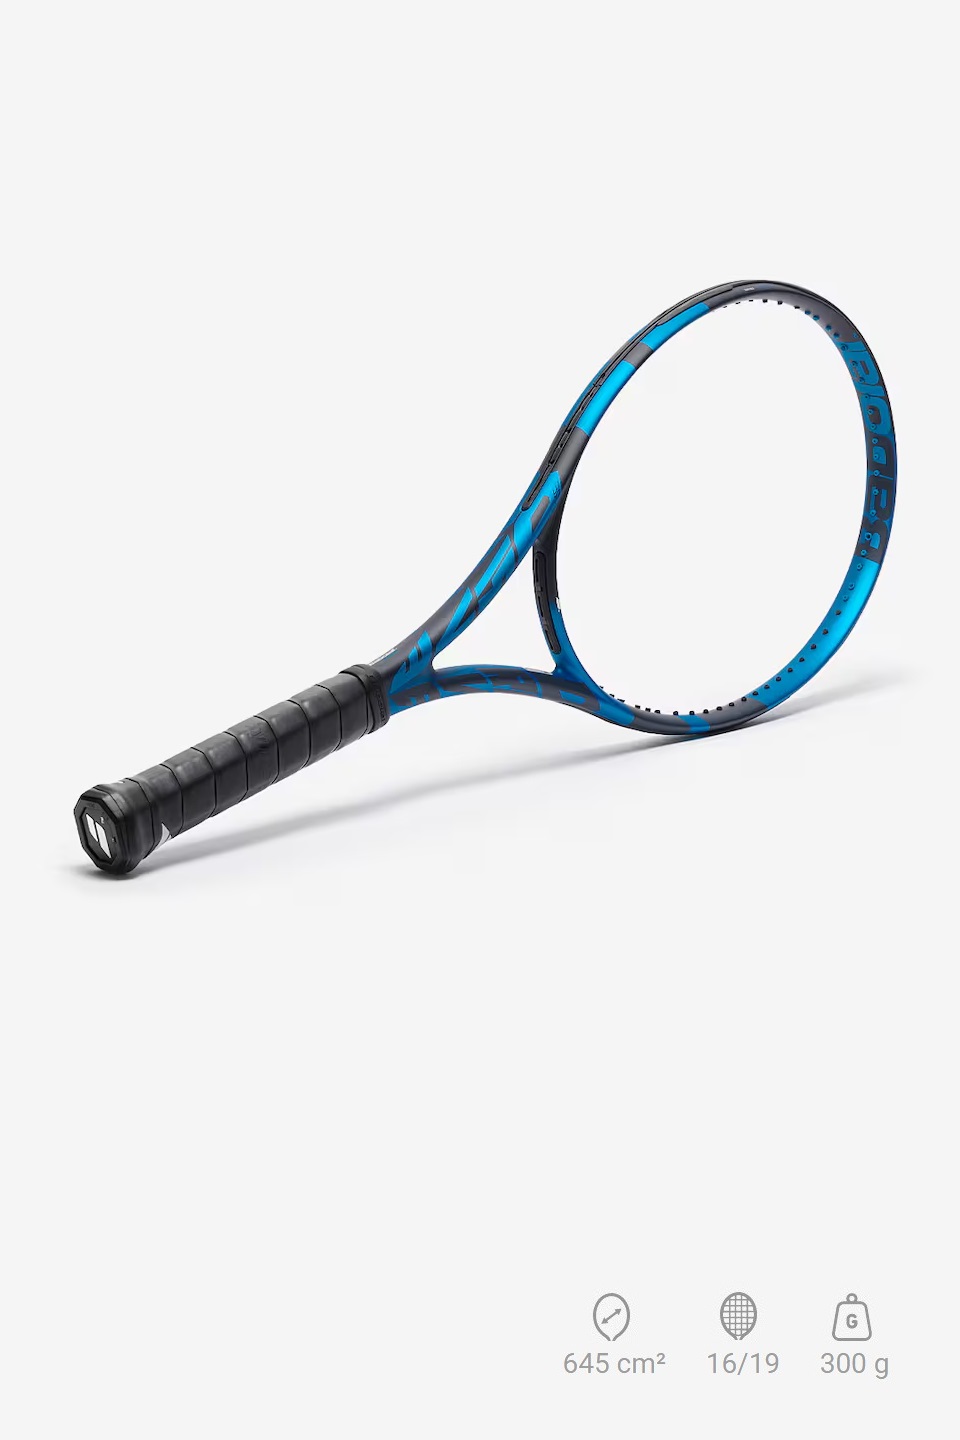 Babolat Pure Drive Tour Tenis Raketi (300 gr)